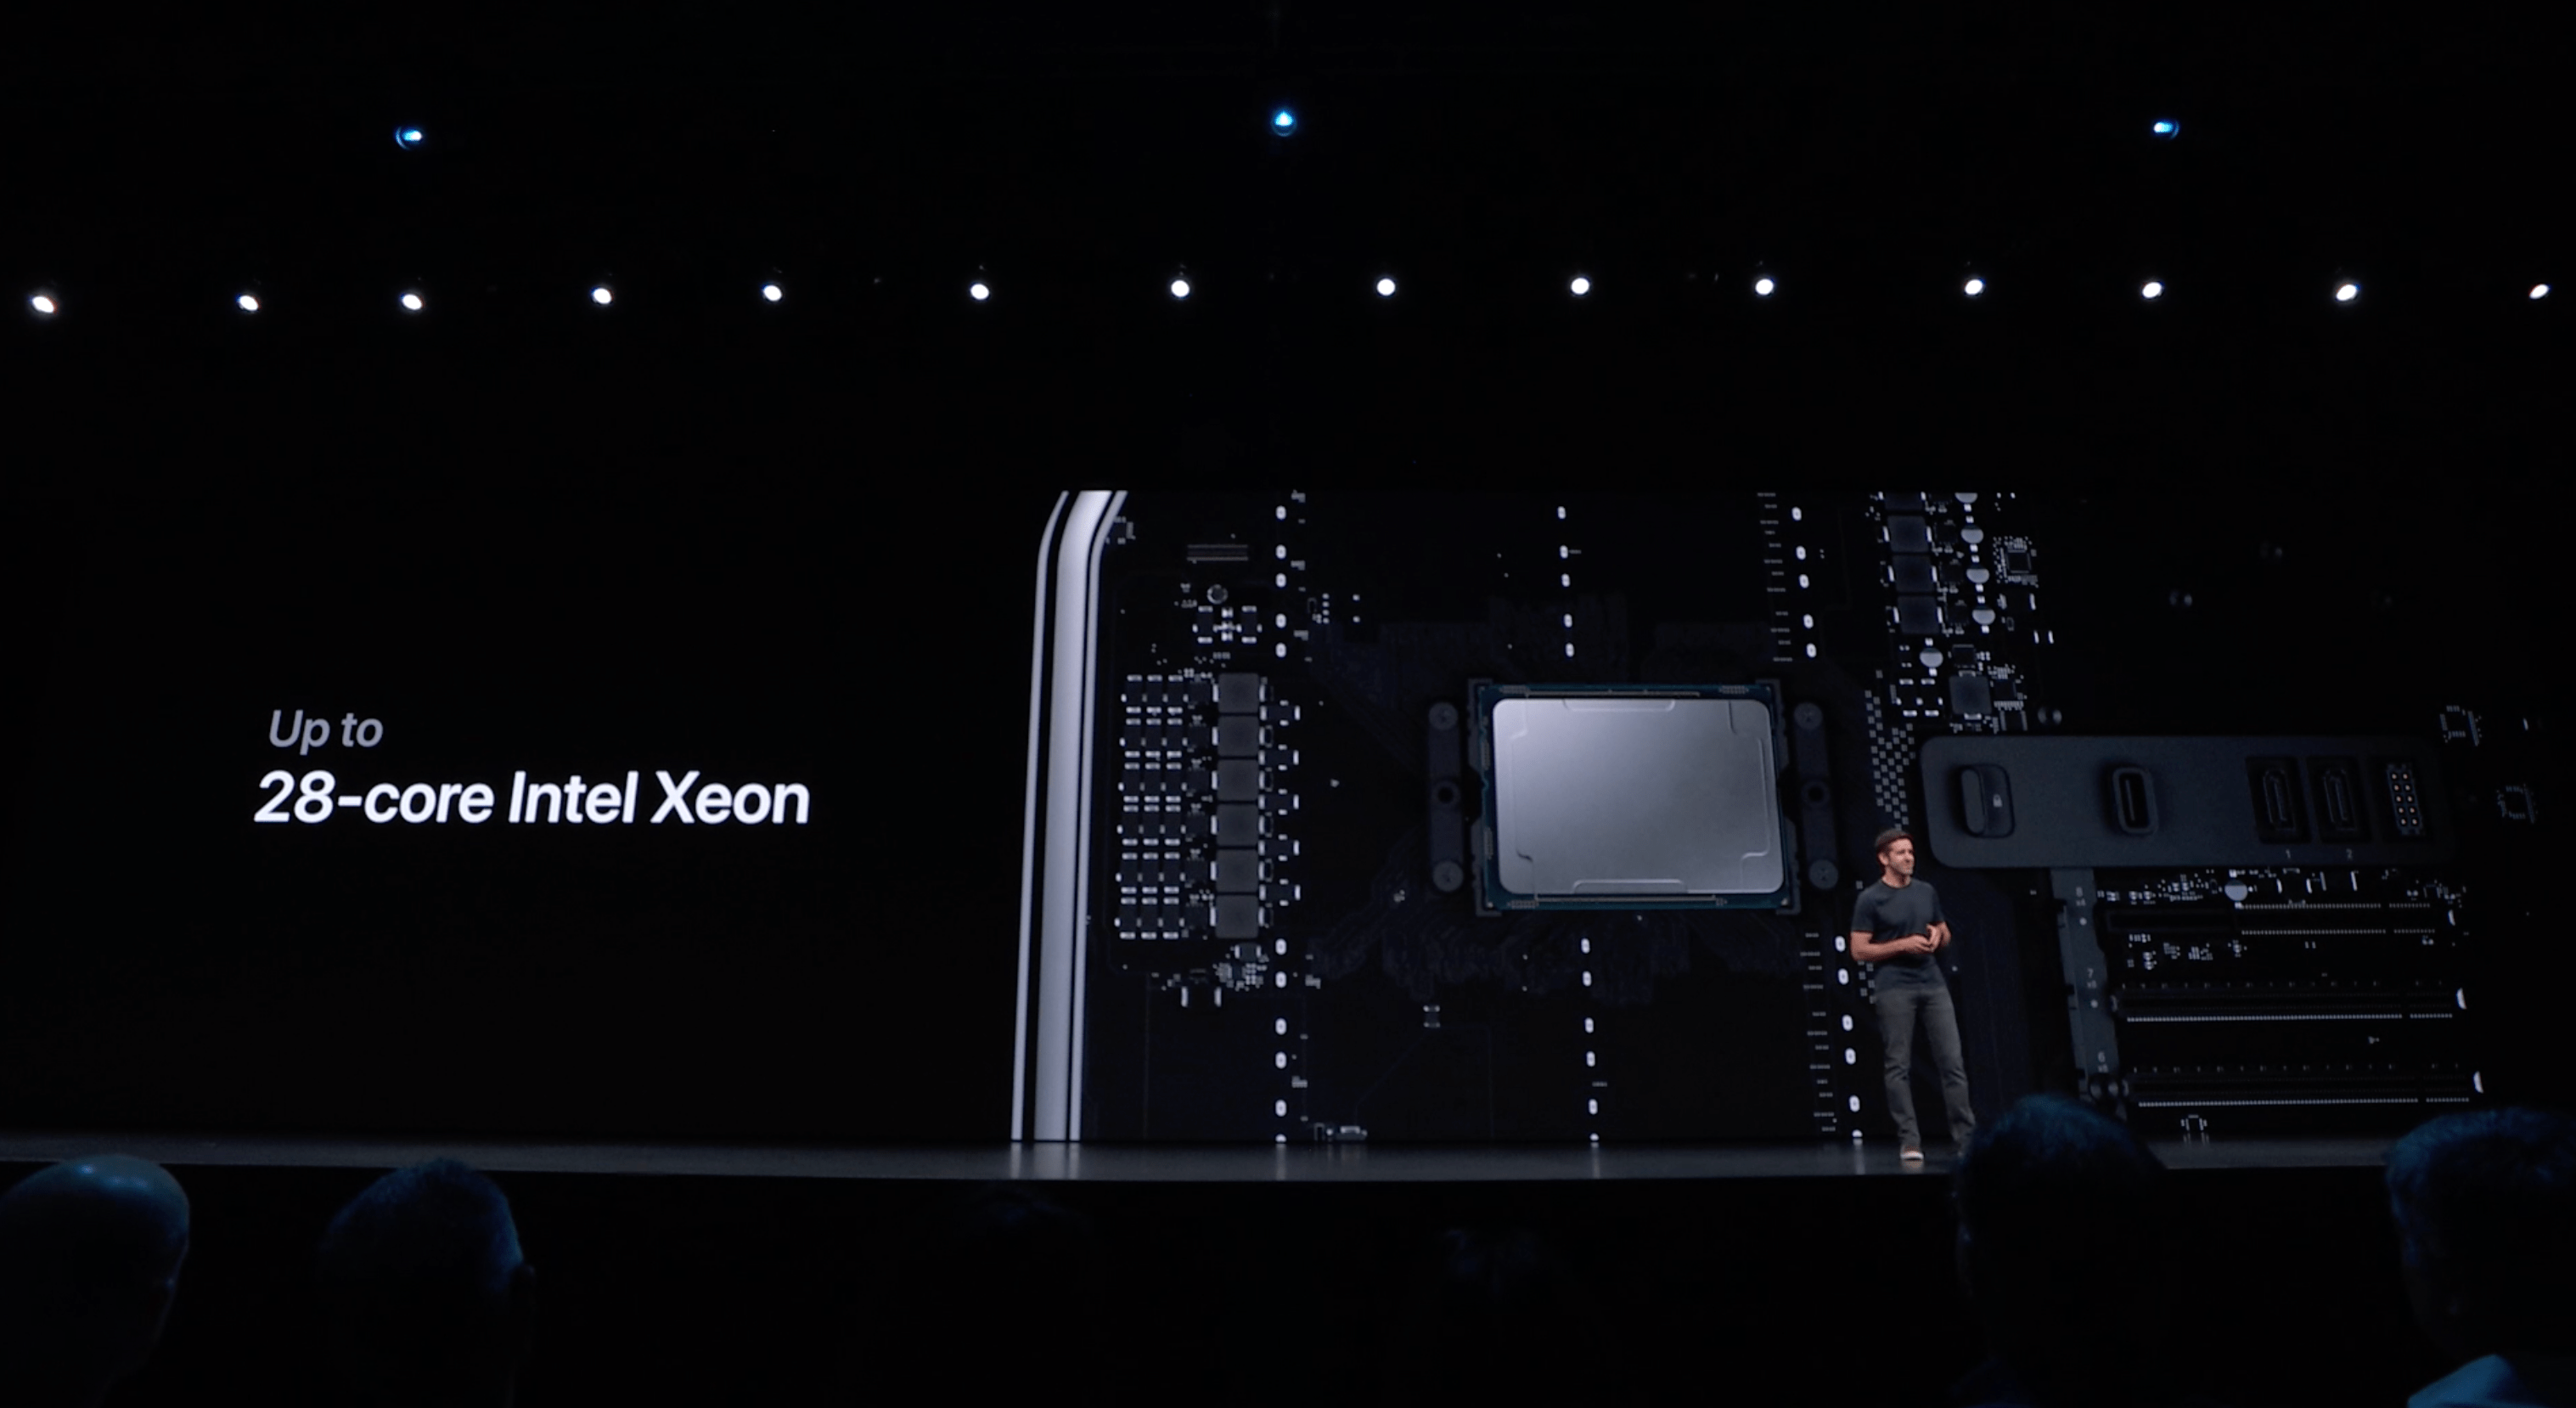 [WWDC19] Apple ra mắt
Mac Pro 2019 với thiết, cơ động hơn, cấu hình siêu mạnh, giá
từ 5999 USD